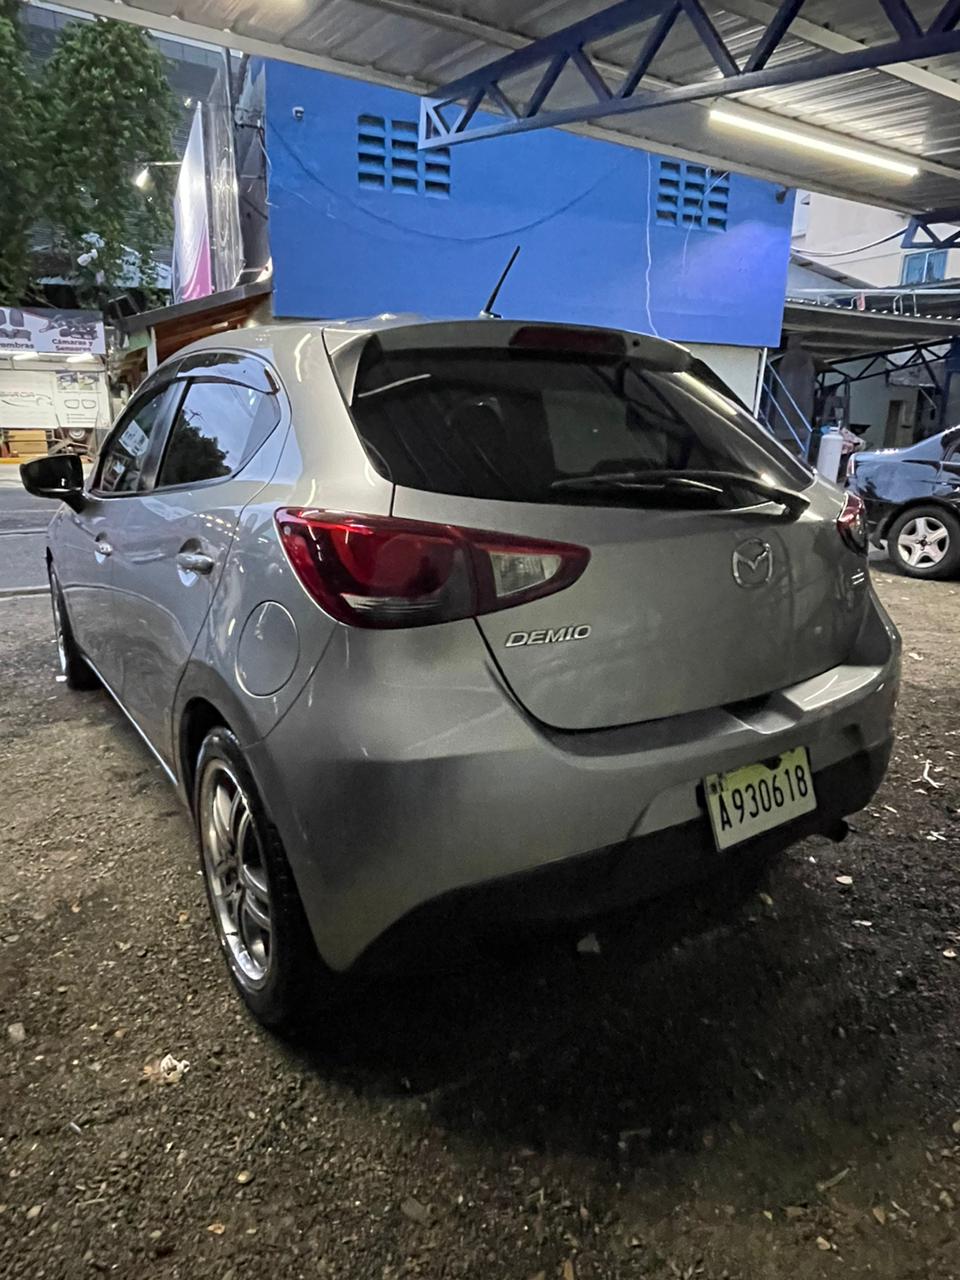 carros - Mazda demio 2016 nitido 4